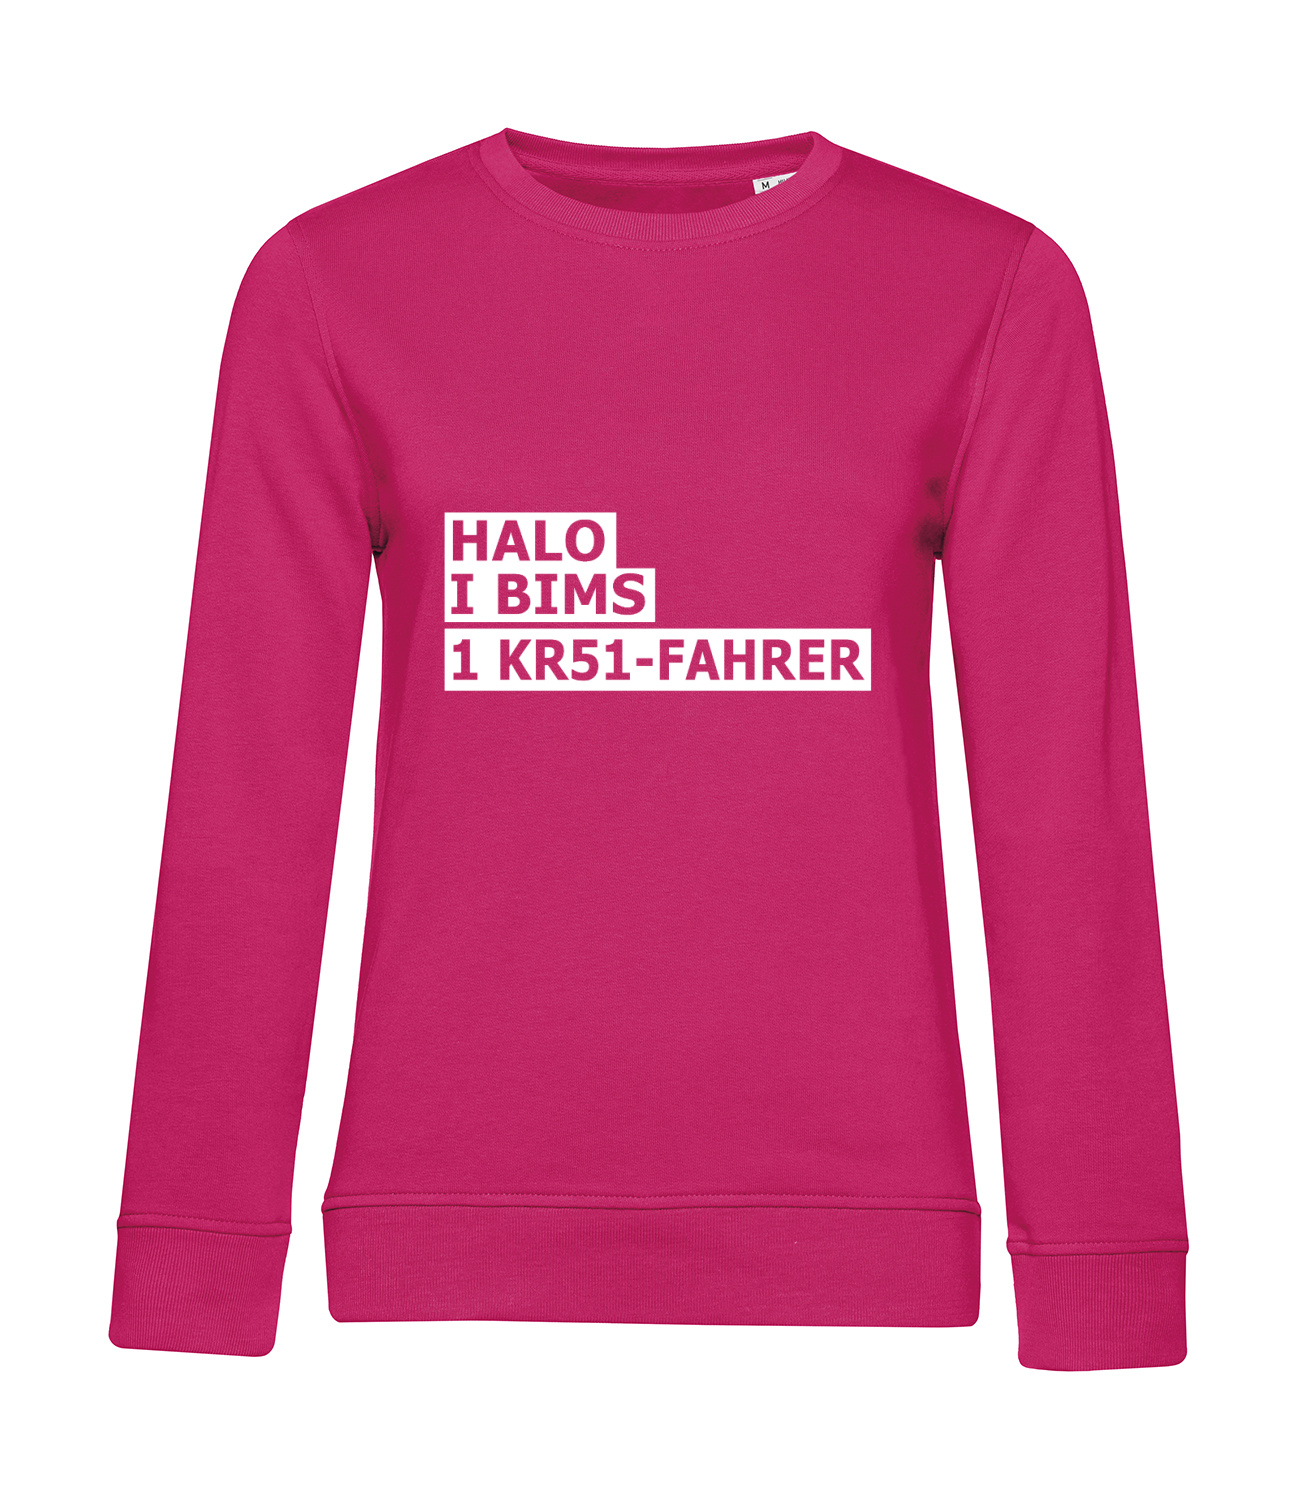 Nachhaltiges Sweatshirt Damen 2Takter - Halo I bims 1 KR51-Fahrer